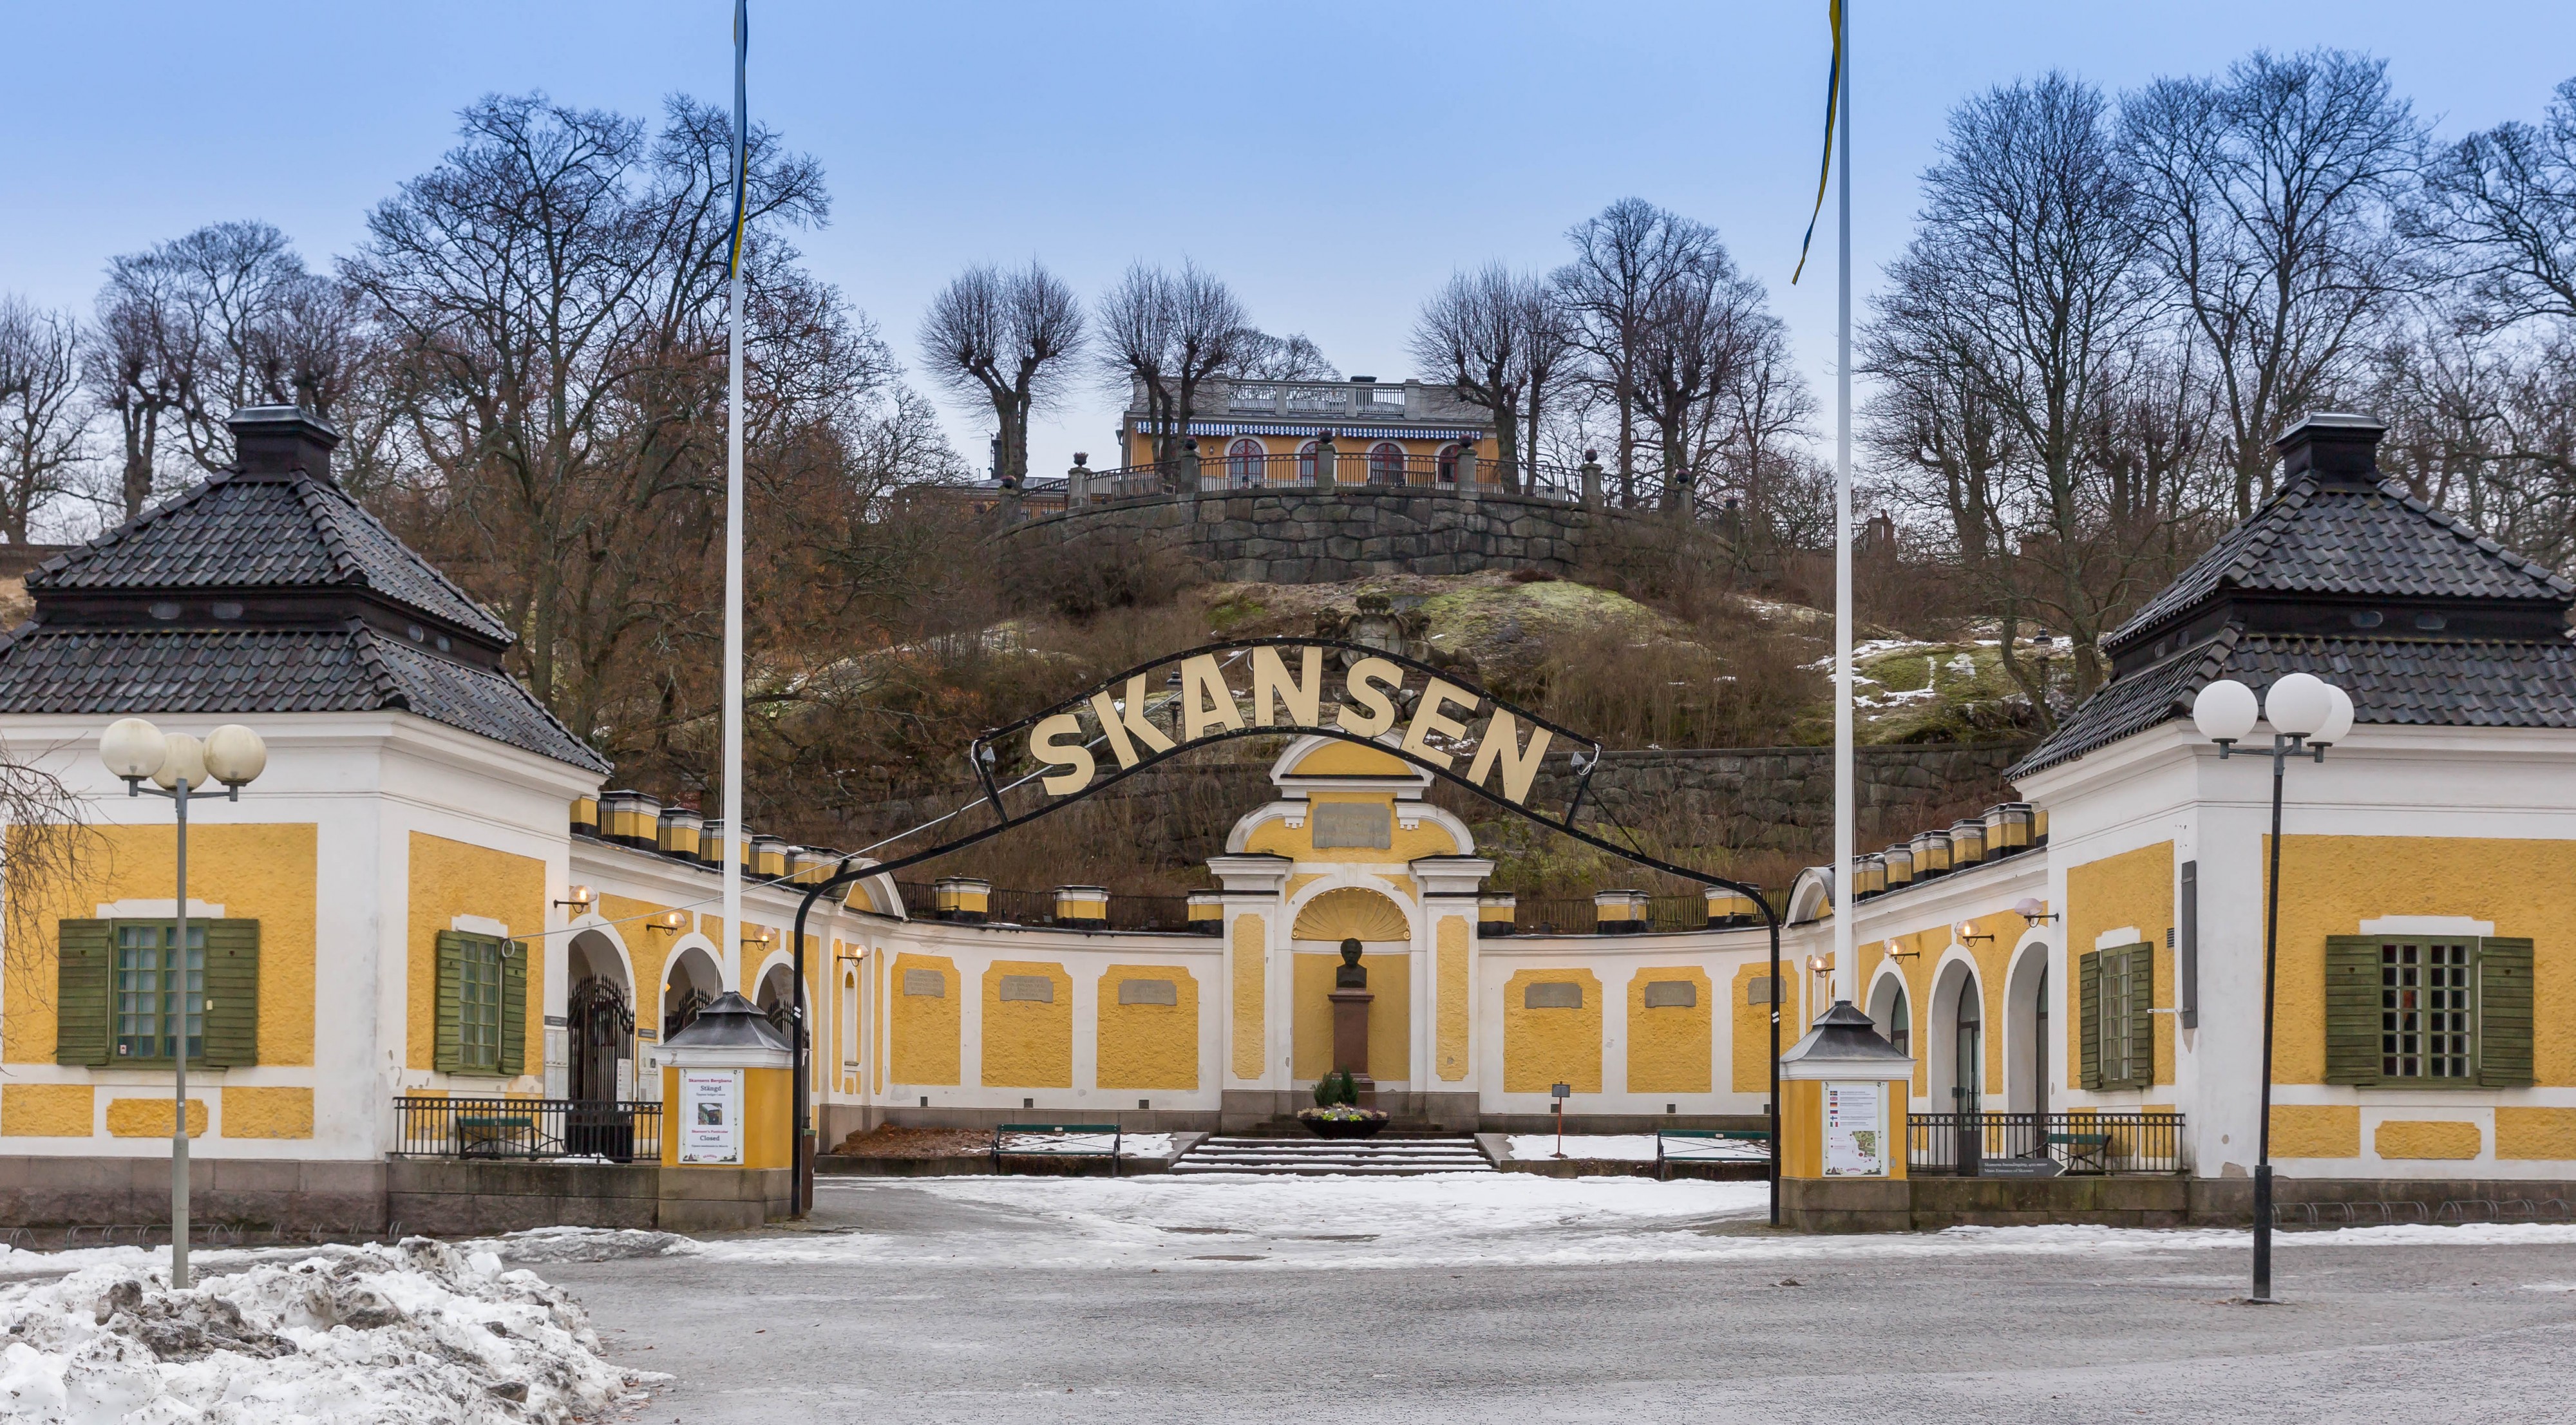 Skansen-Eingang (Entry) (32118992260)